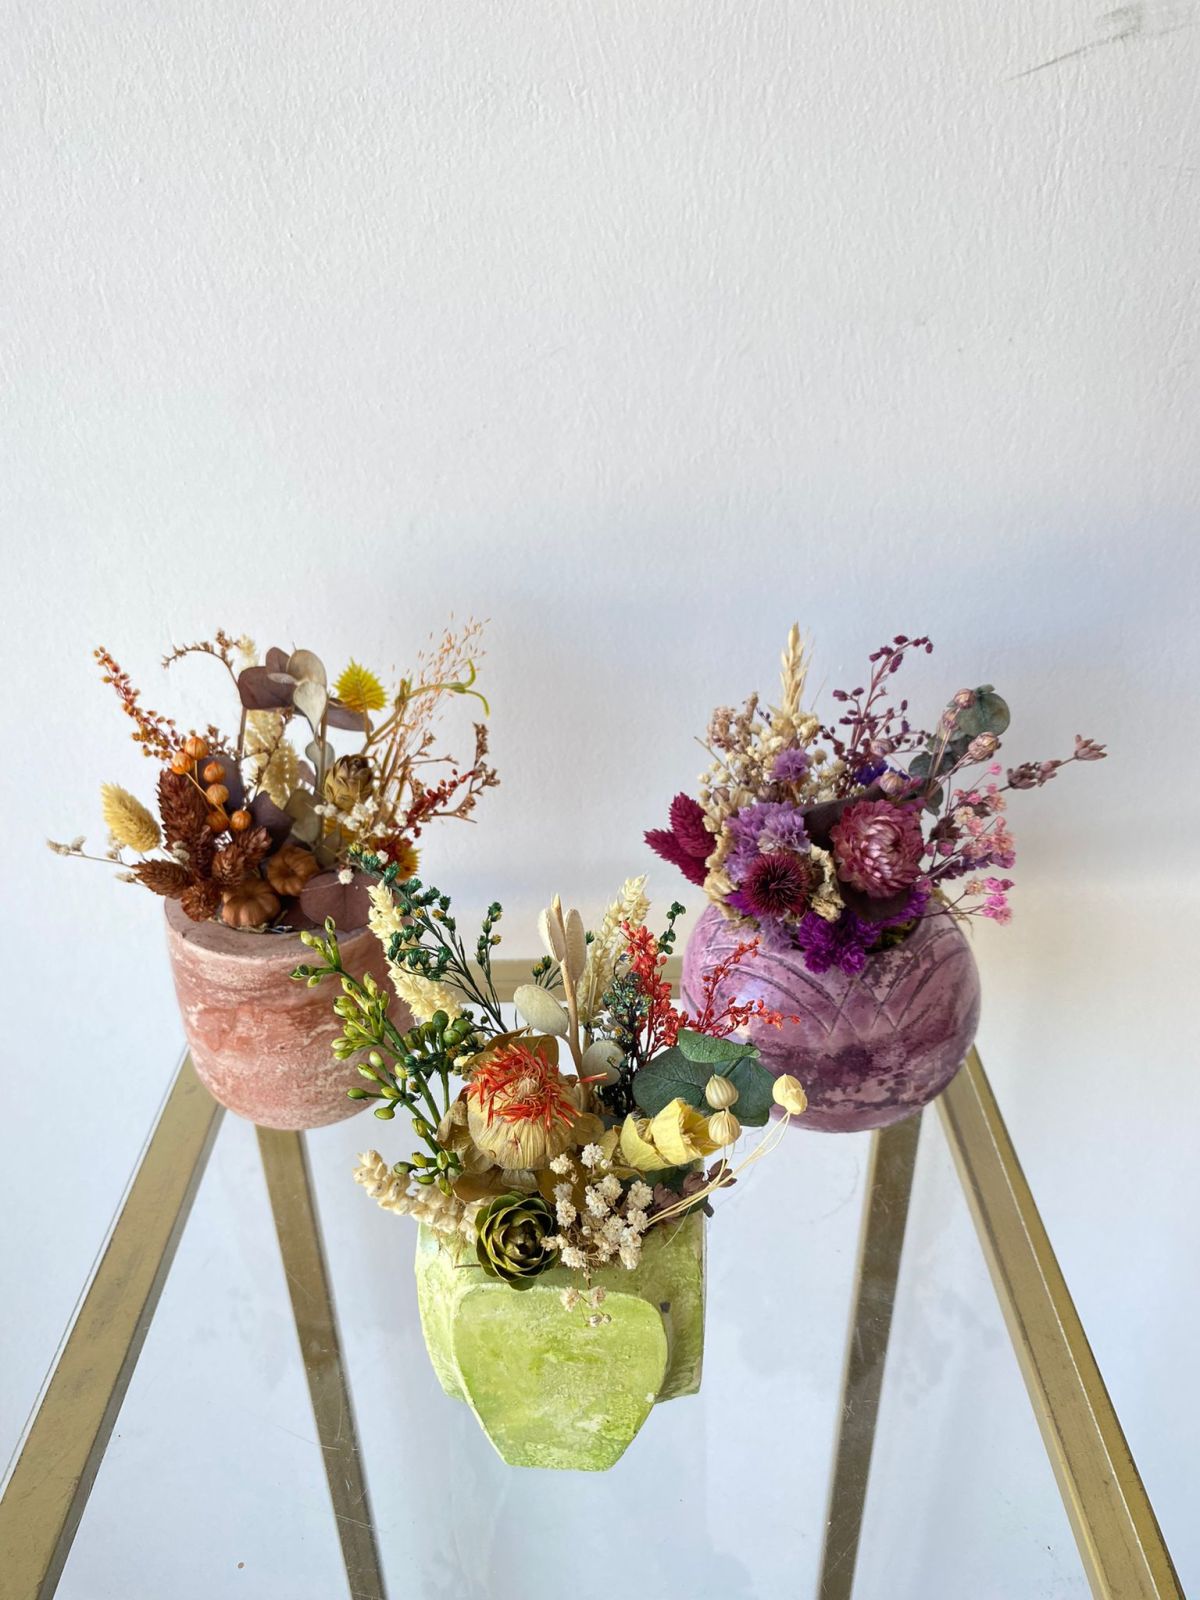 Ghiveci decorativ cu flori artificiale, homs seria A620,17x5.5x9 cm,30358